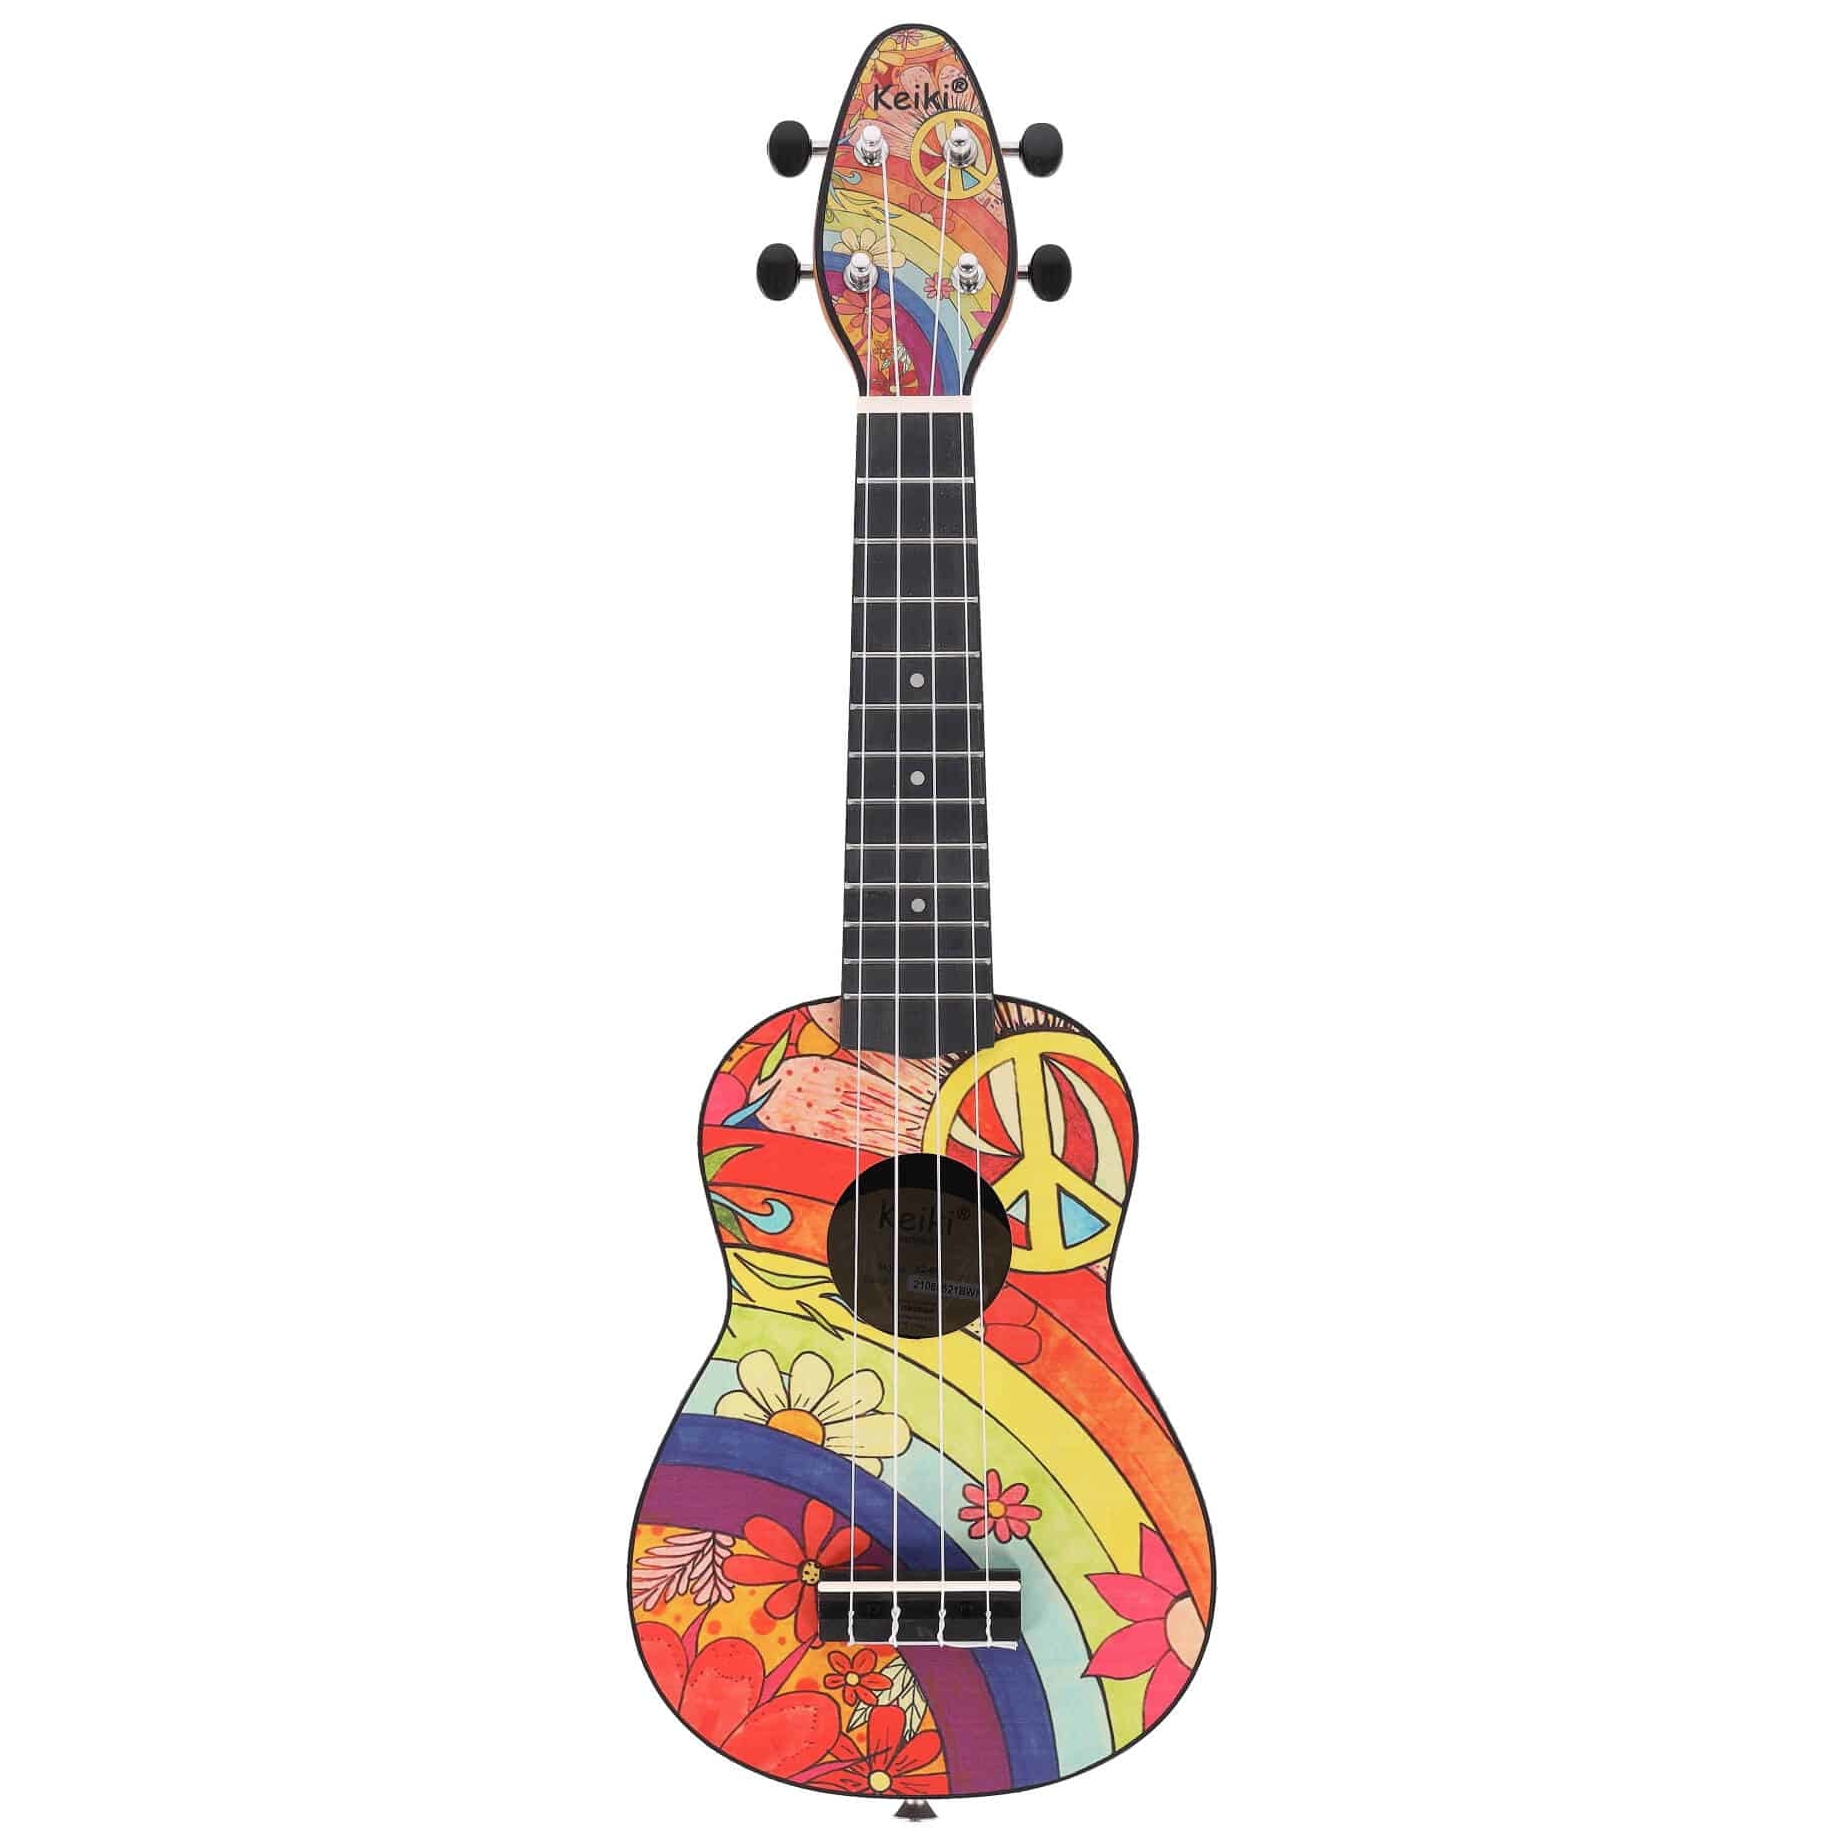 Ortega K2-68 ukulele